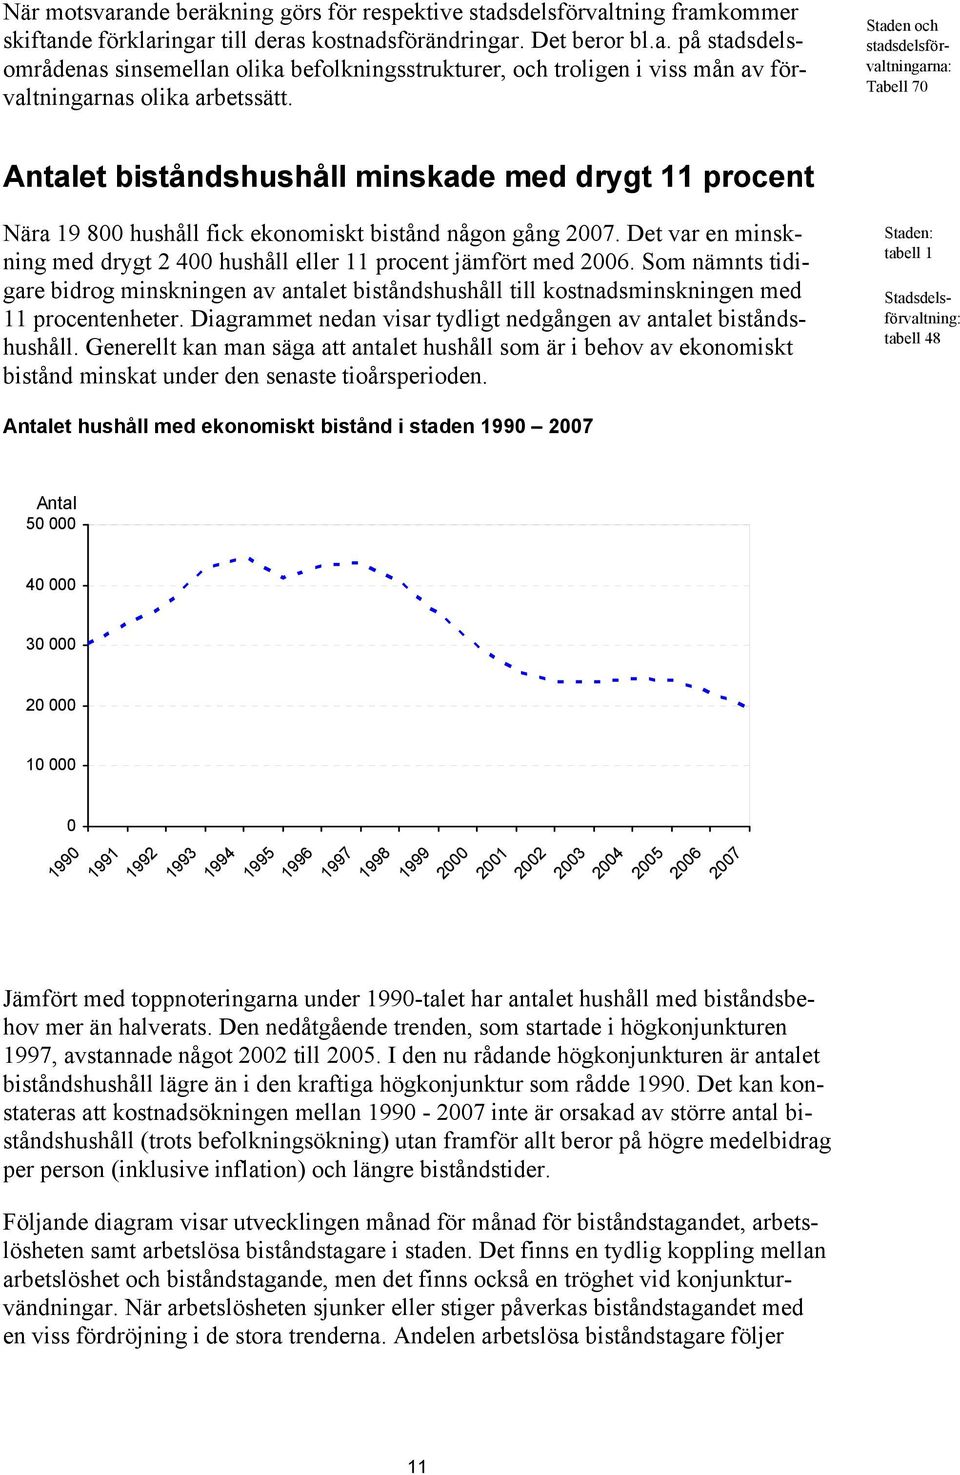 Det var en minskning med drygt 2 400 hushåll eller 11 procent jämfört med 2006. Som nämnts tidigare bidrog minskningen av antalet biståndshushåll till kostnadsminskningen med 11 procentenheter.